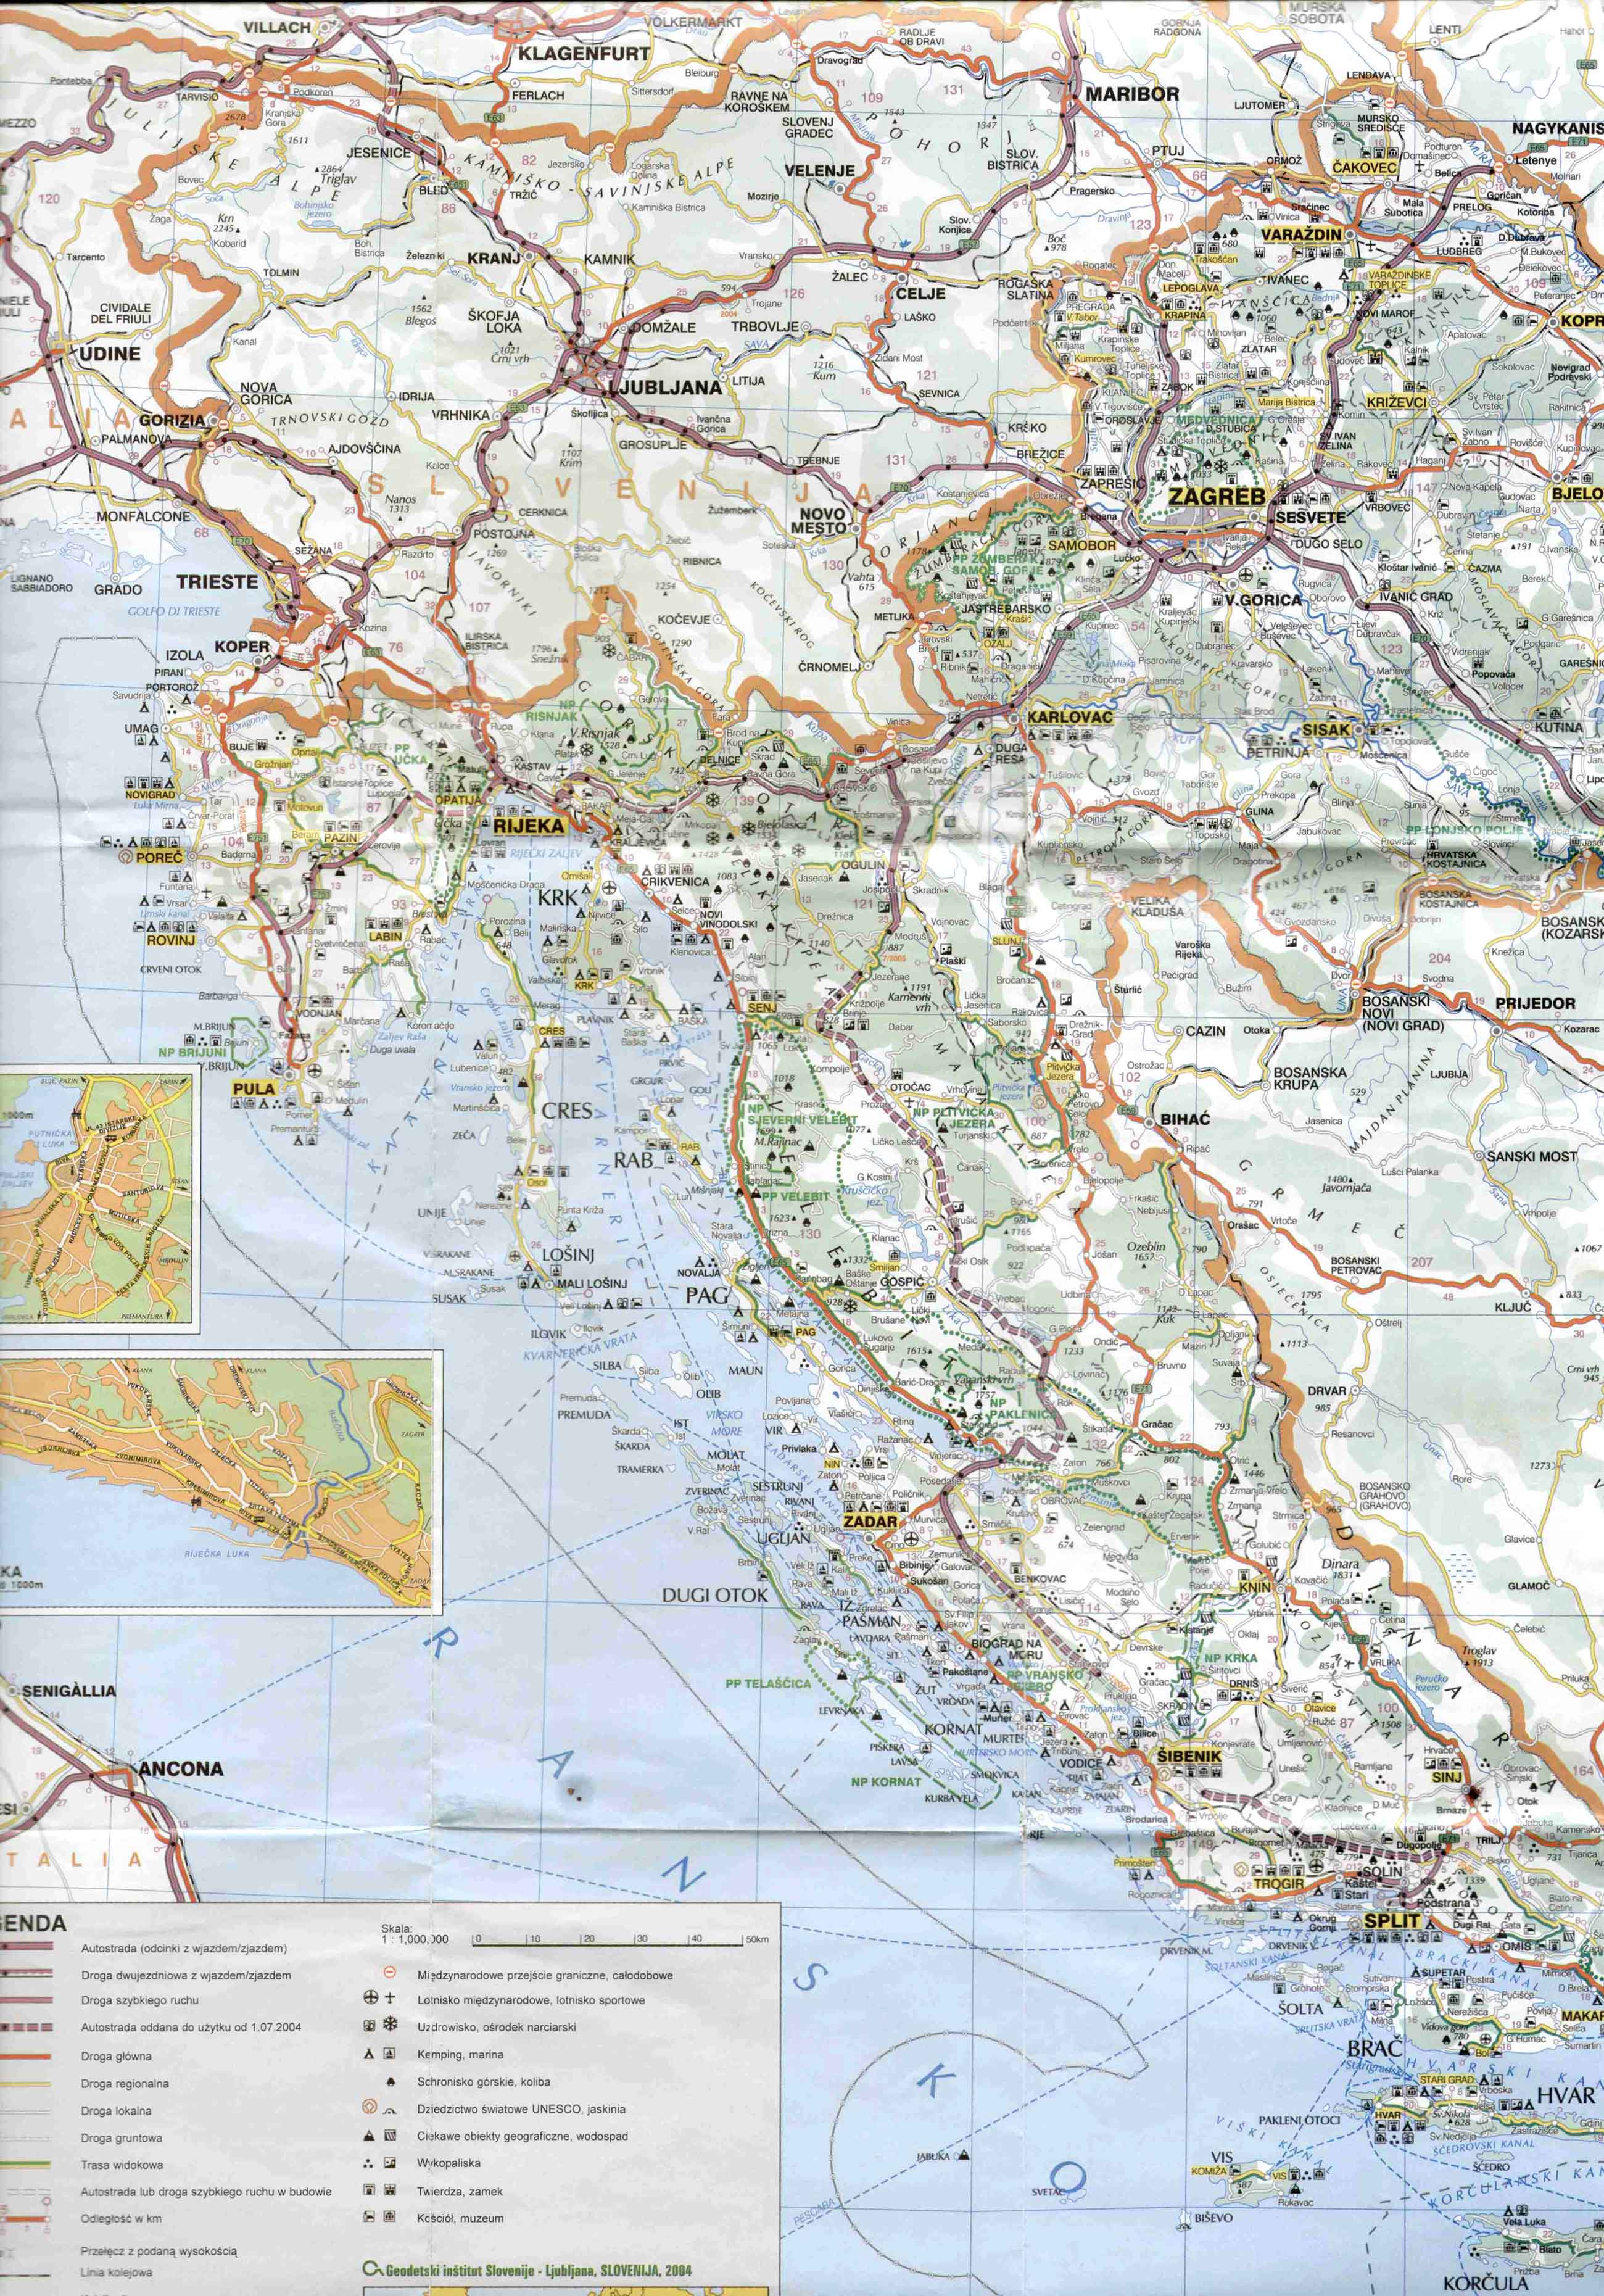 térkép magyarország horvátország Új autópályaszakaszok és díjak Horvátországban 2004 térkép magyarország horvátország